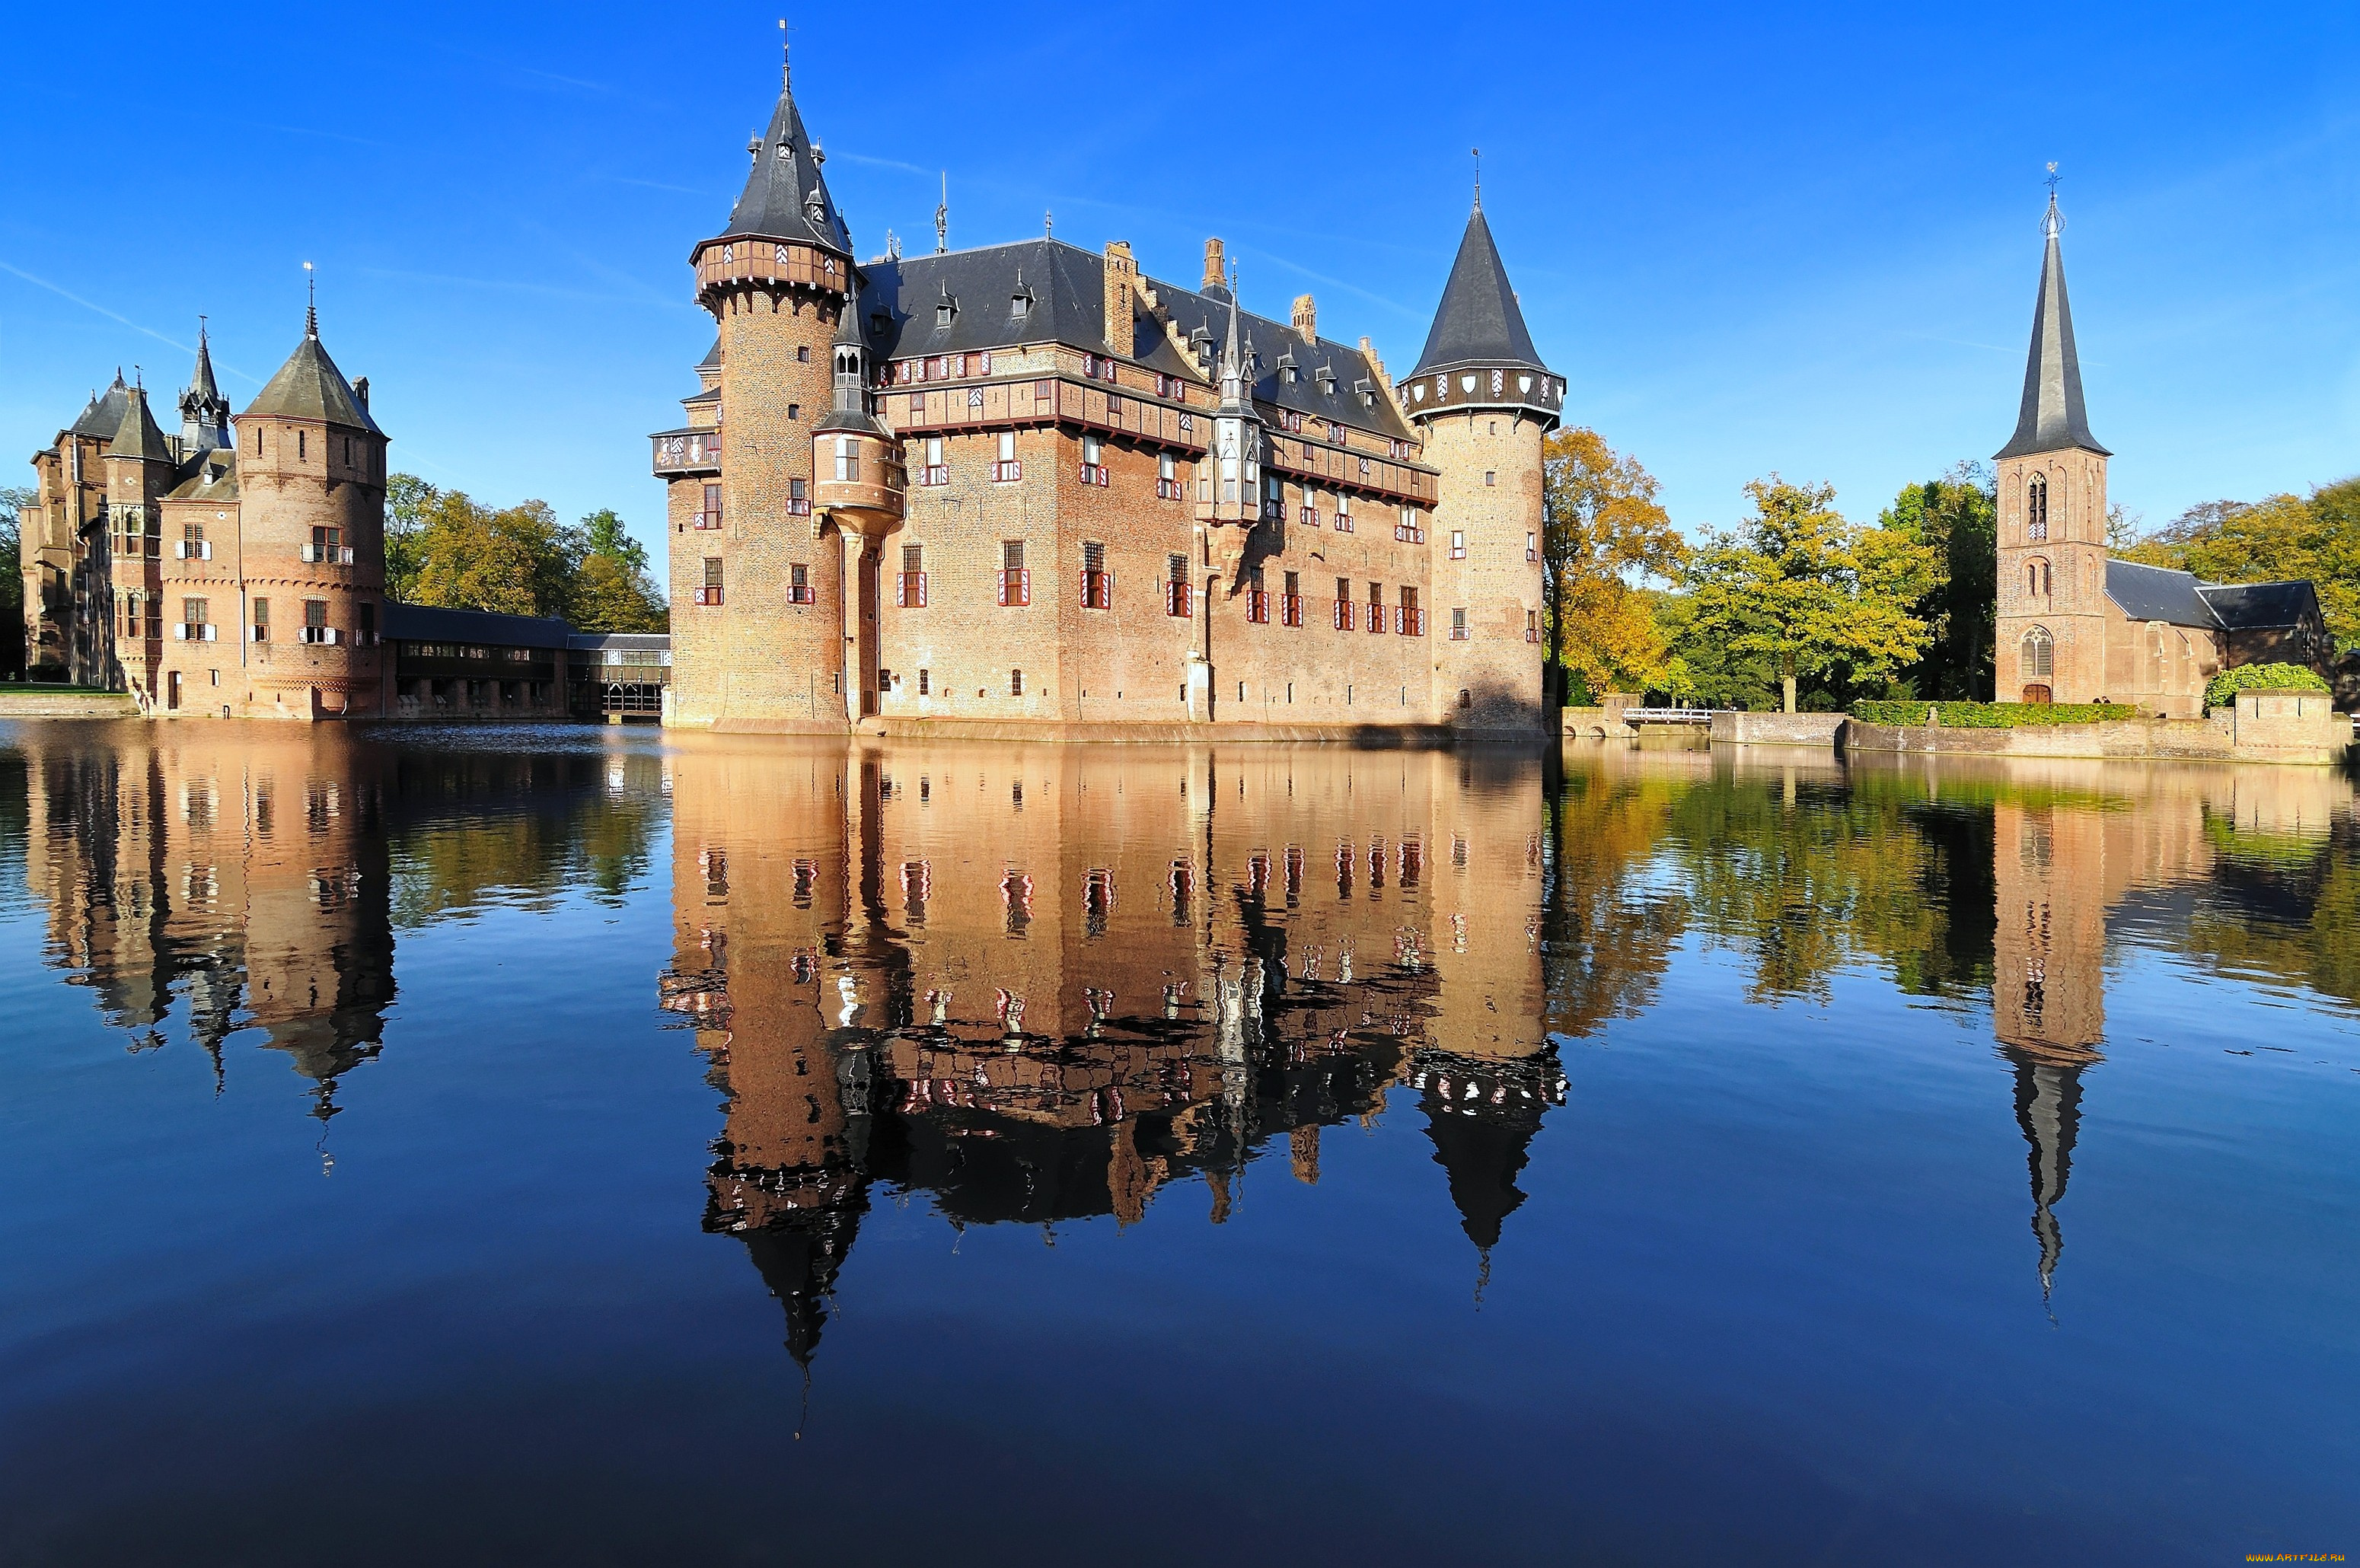 замок, де, хаар, нидерланды, города, дворцы, замки, крепости, каменный, вода, отражение